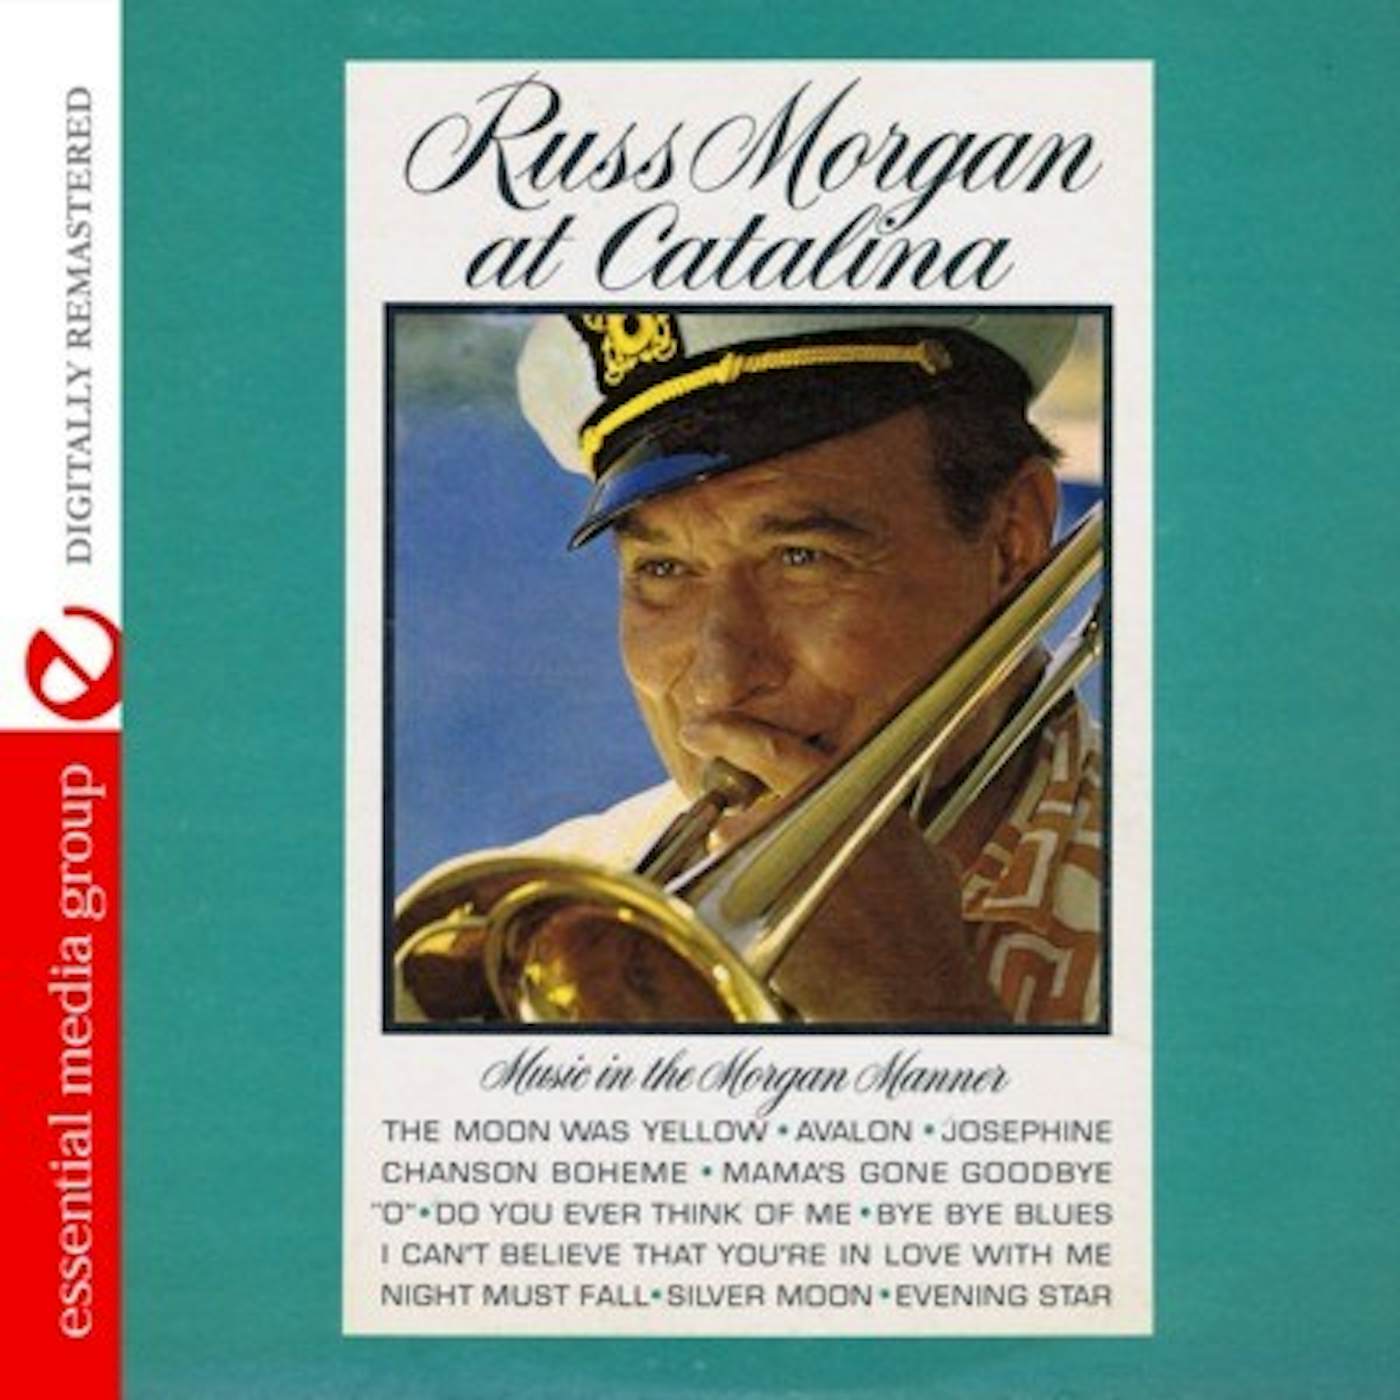 Russ Morgan AT CATALINA CD